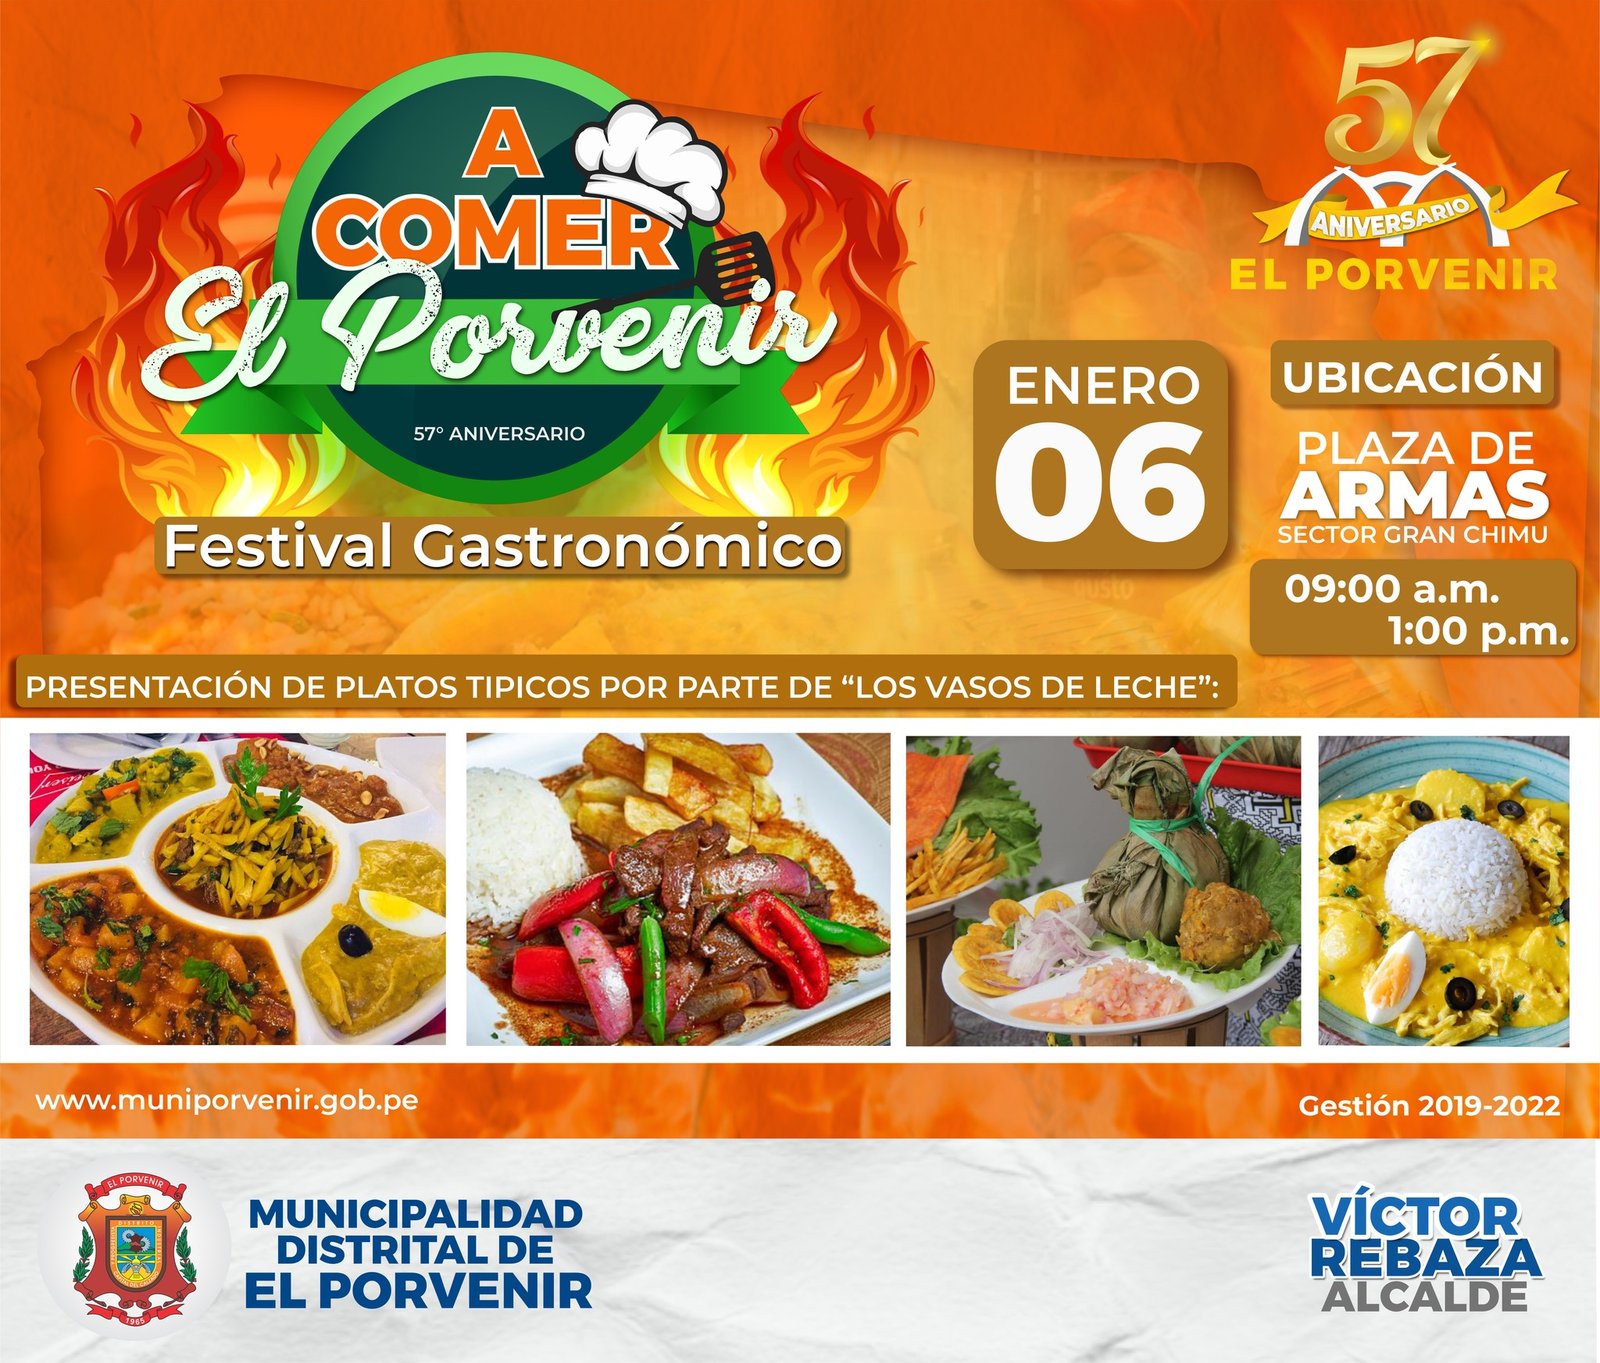 Festival Gastronómico | A comer El Porvenir, este 6 de enero. -  Municipalidad Distrital de El Porvenir